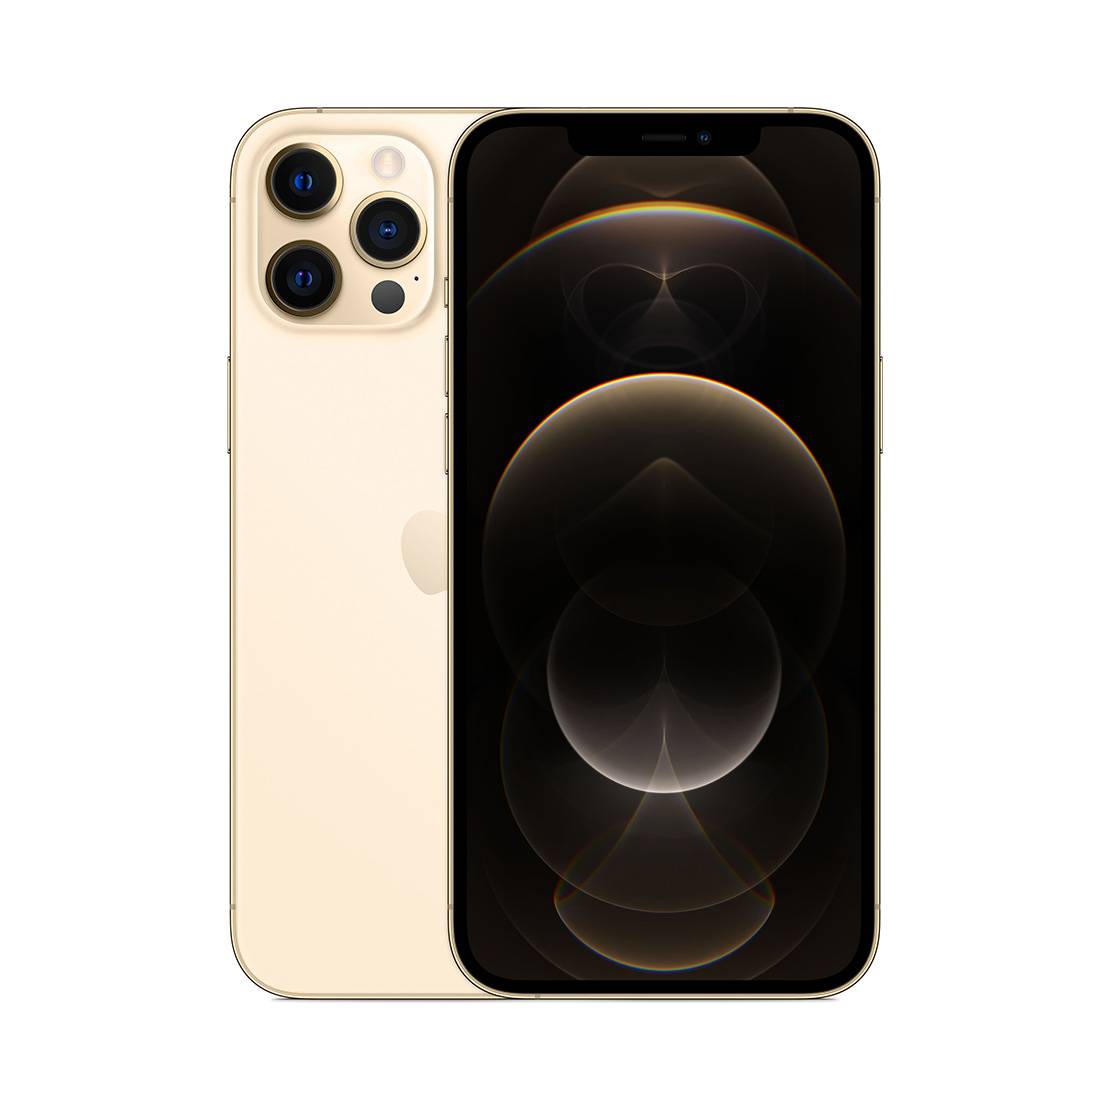 Купить iPhone 12 Pro Max 256GB Gold в Москве РСТ, цена, отзывы 2020